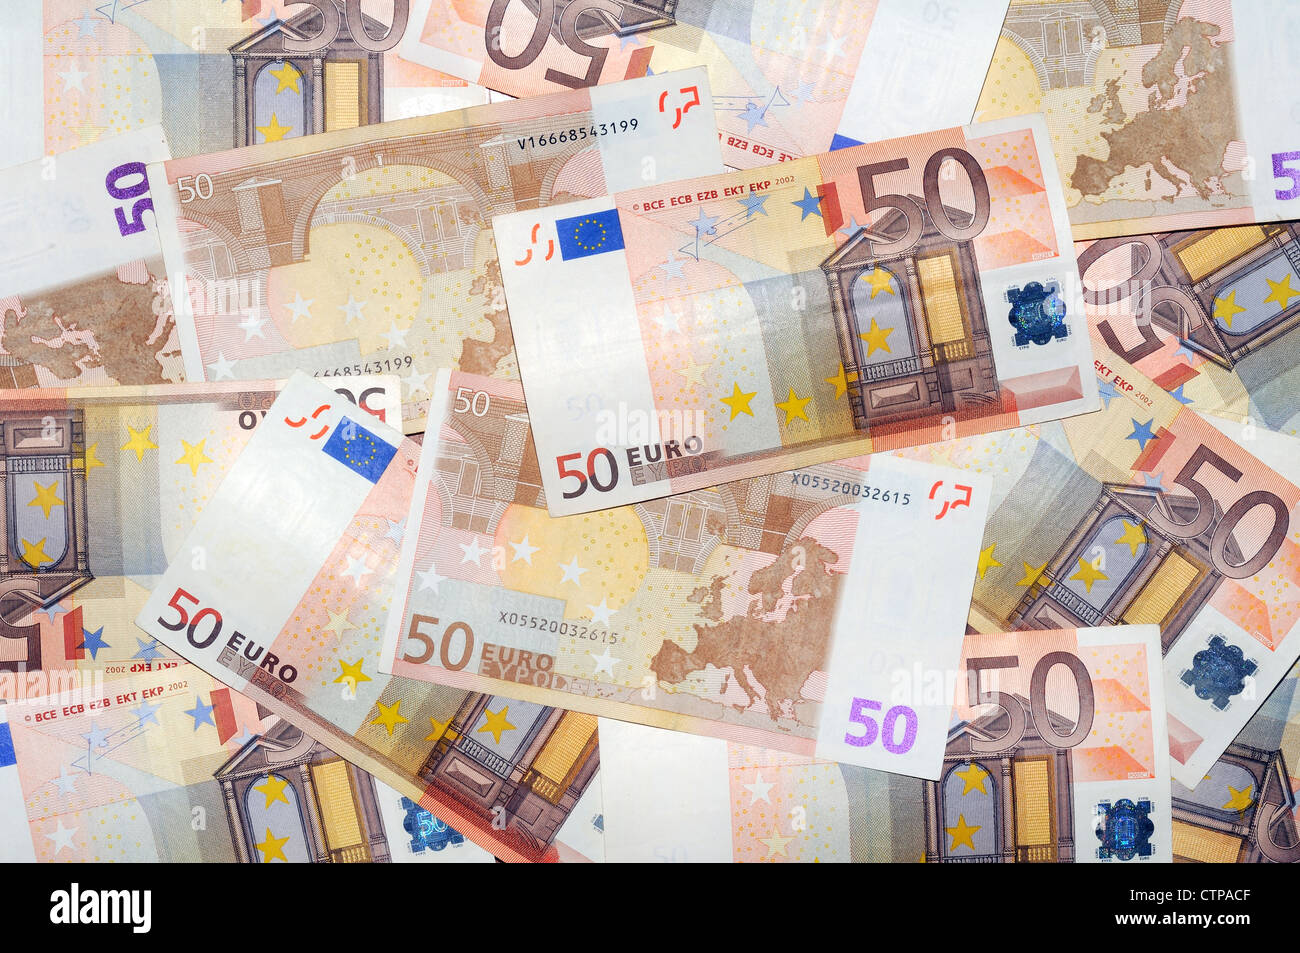 notes 50 Euro Stock Photo